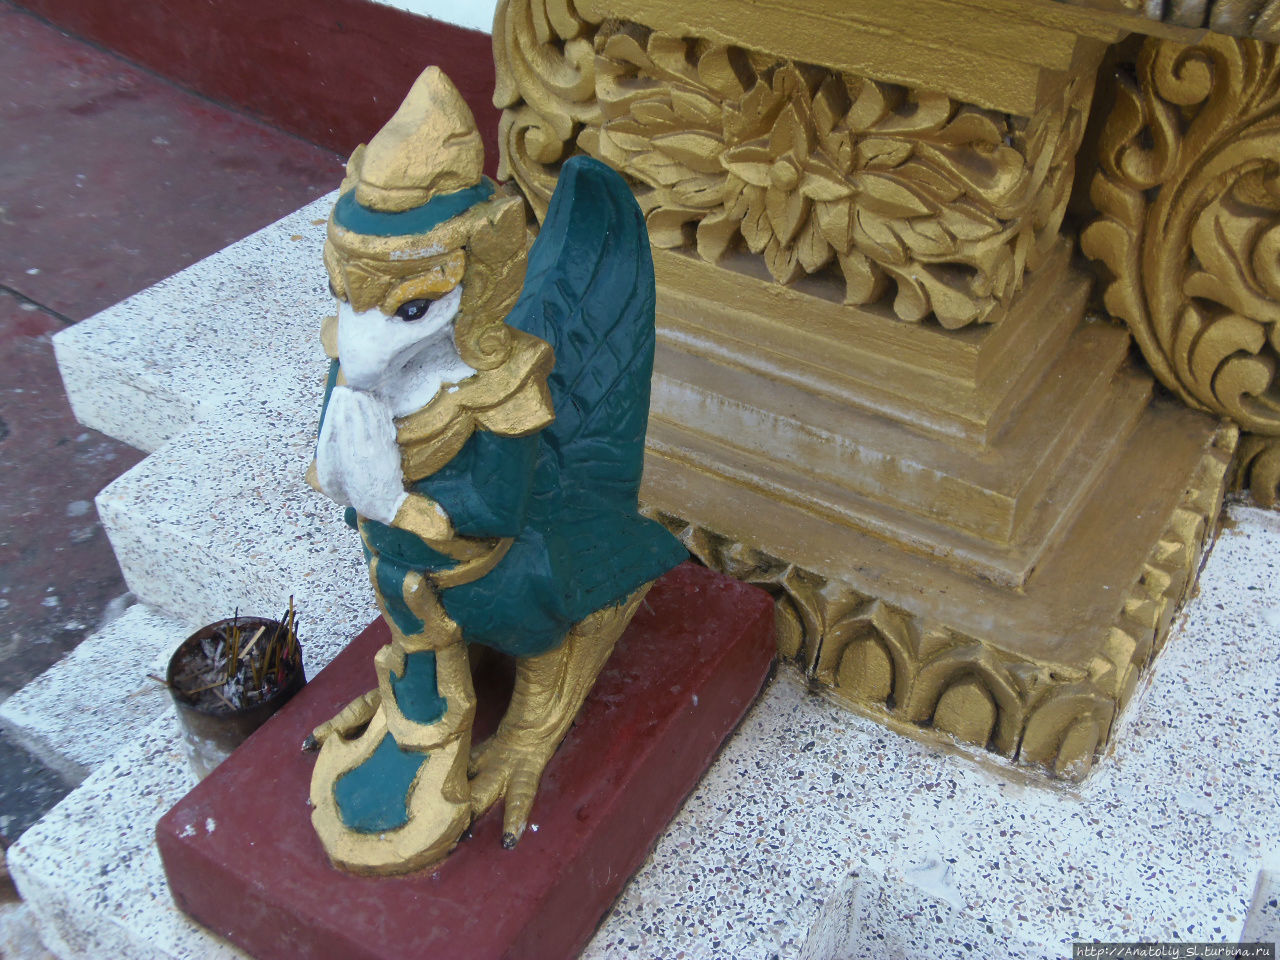 Бандарба́н. Монастырь Будда дхату Джади или Золотой Храм